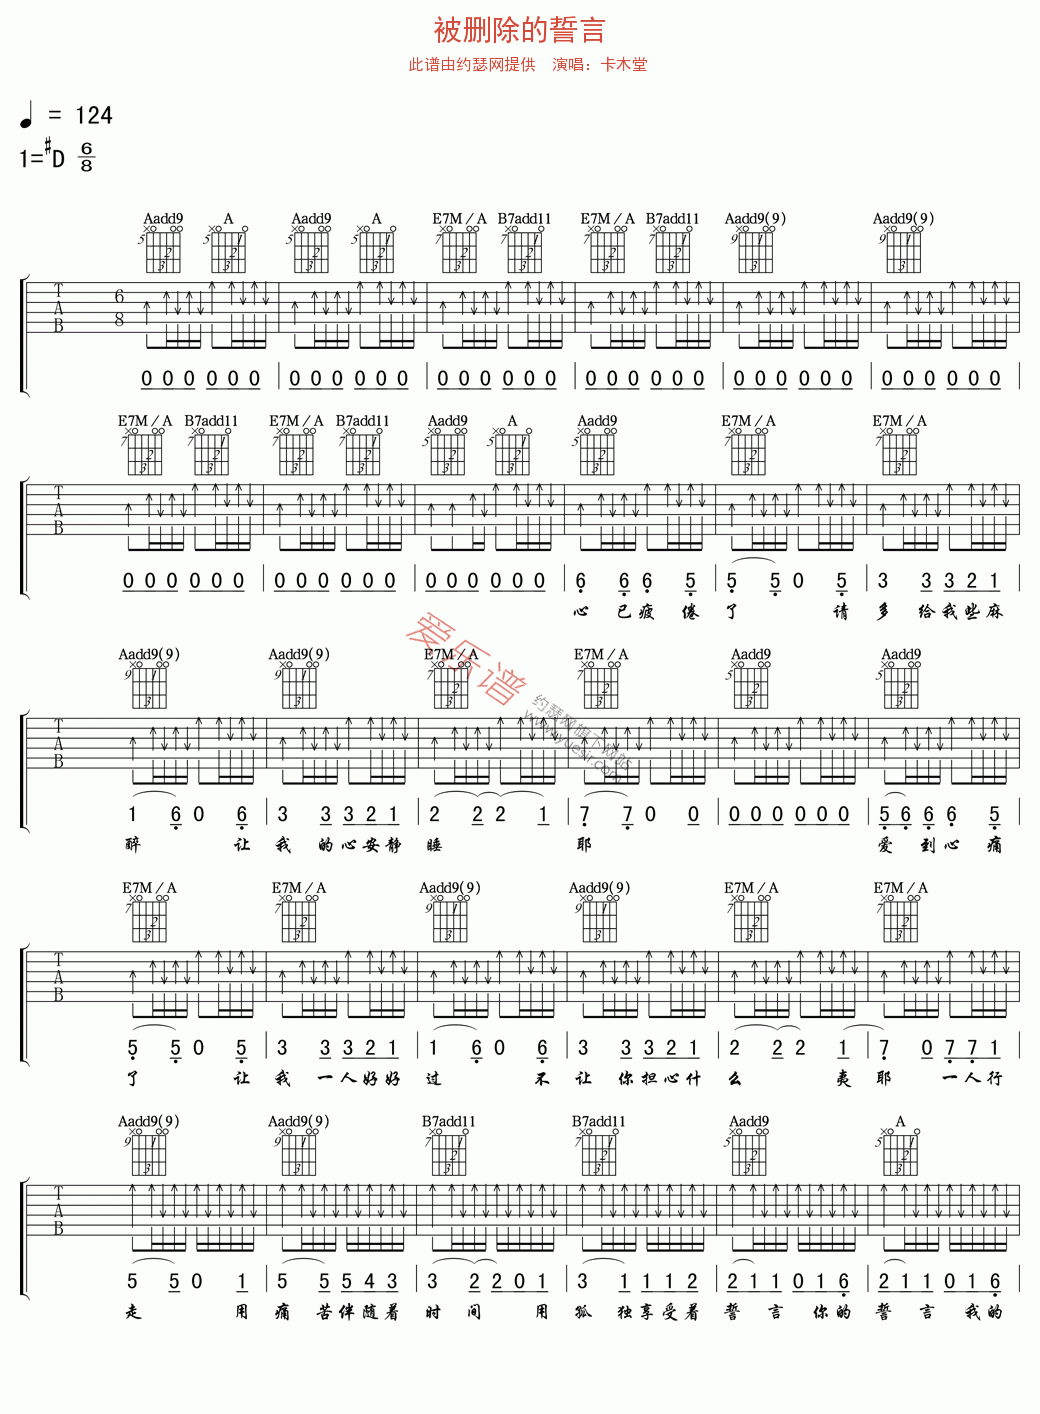 卡木堂《被删除的誓言》吉他谱Eb调六线谱(图)1